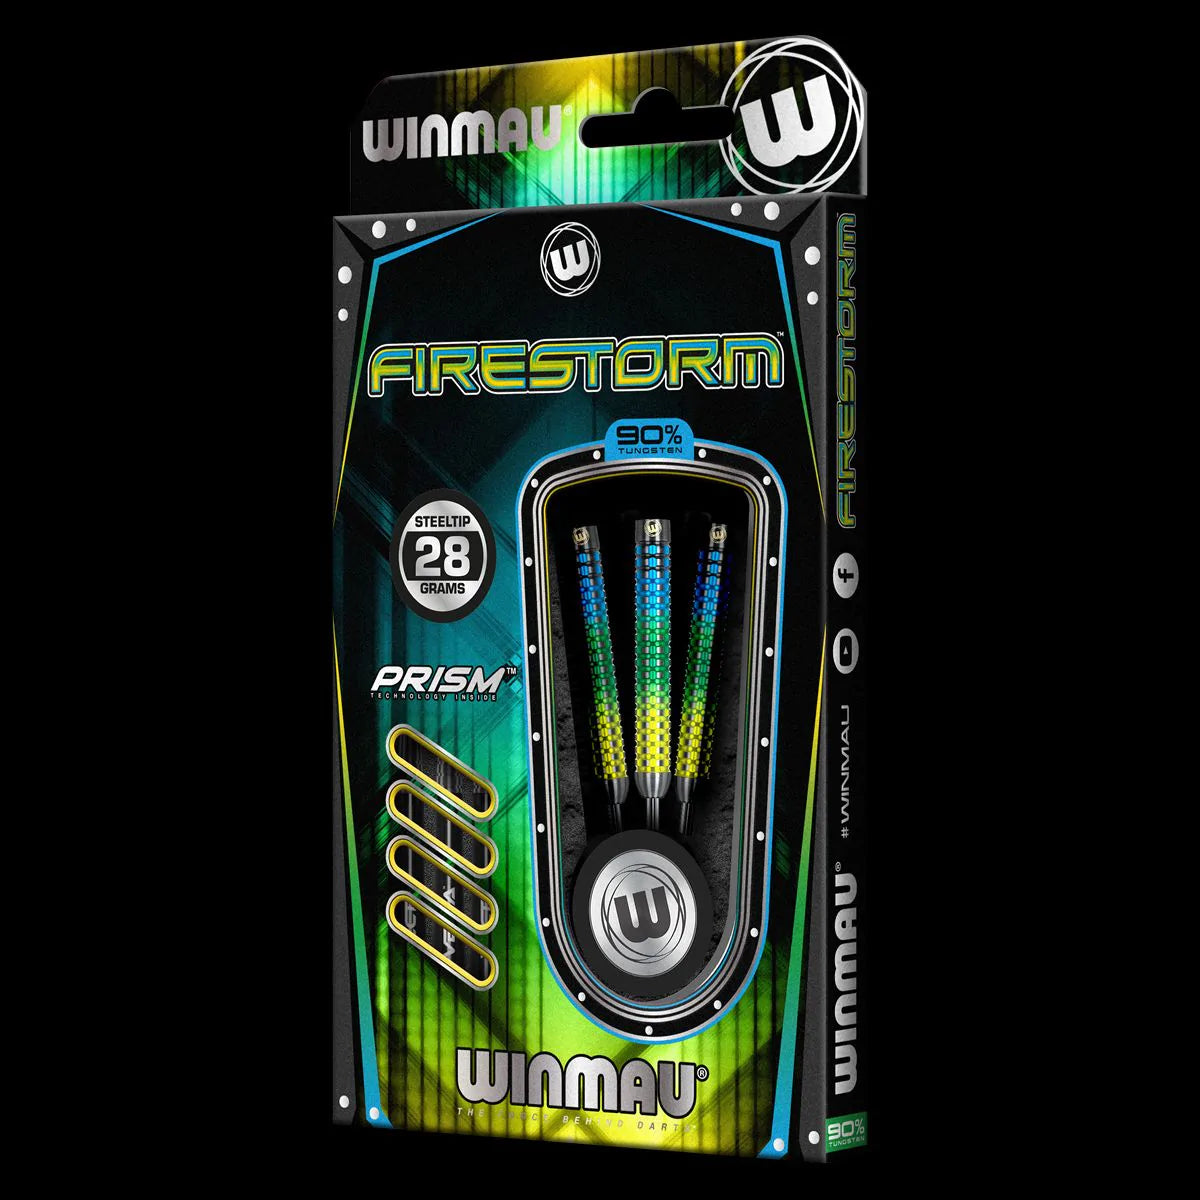 WINMAU - Firestorm Darts - 90% Tungsten - 28g